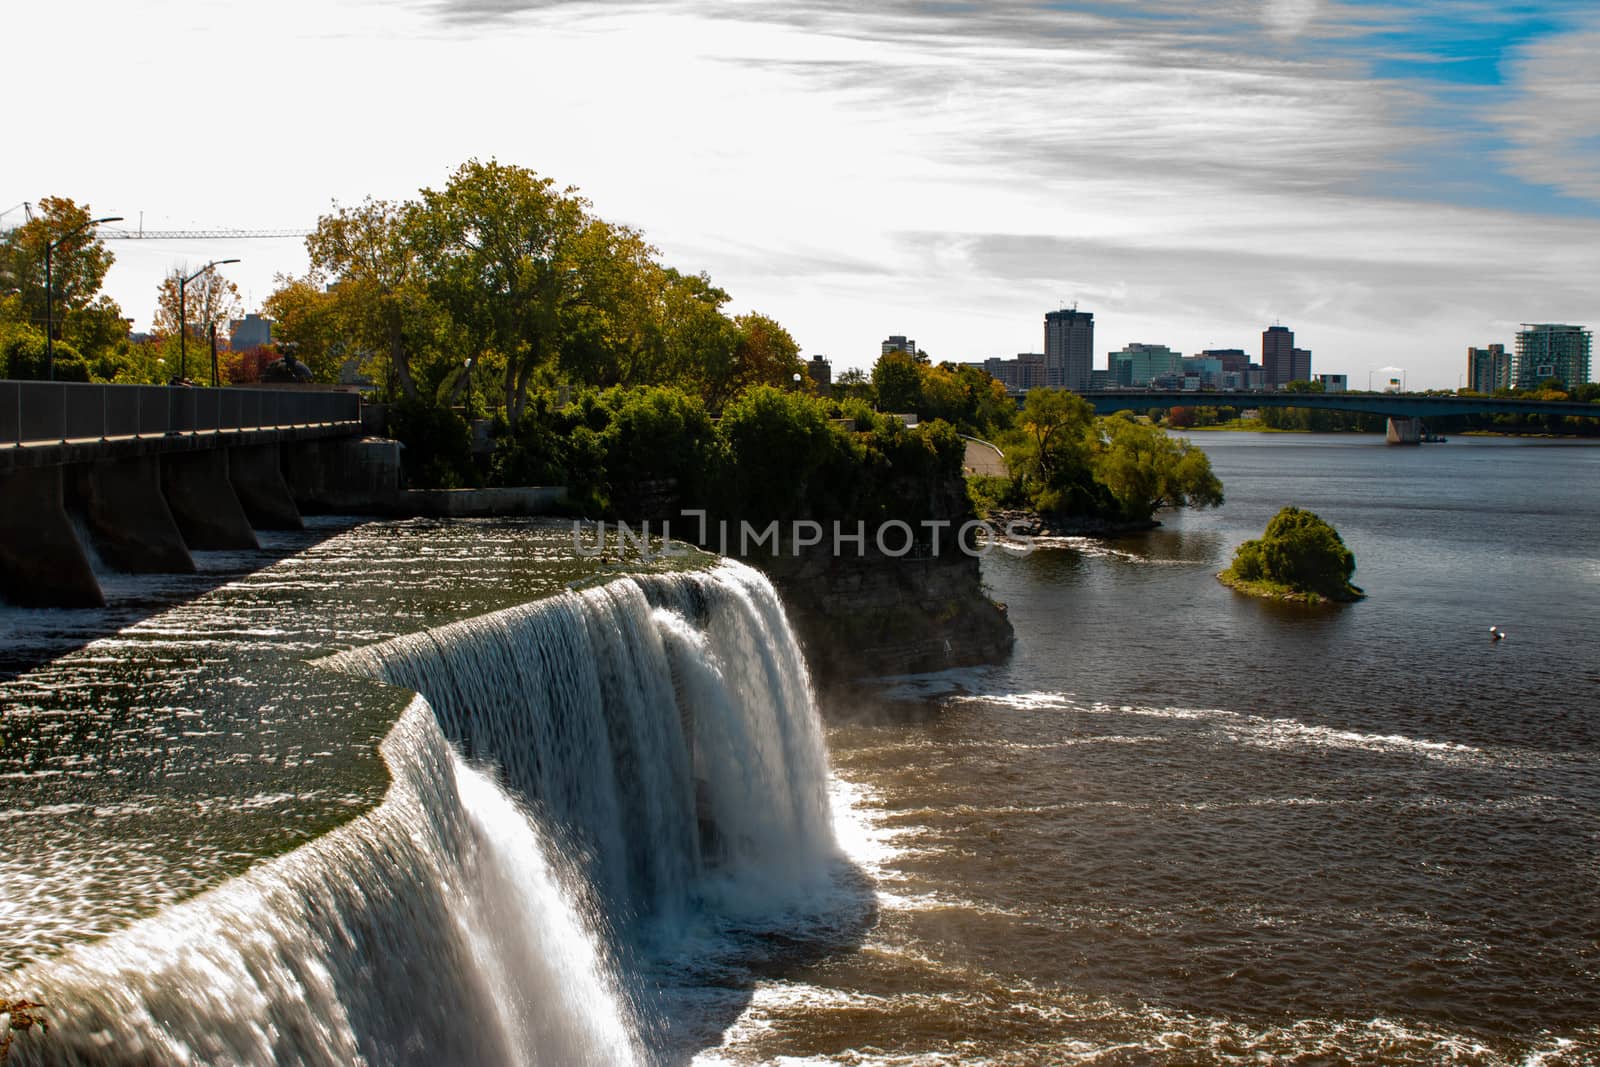 The popular rideau falls in Ottawa Canada by mynewturtle1